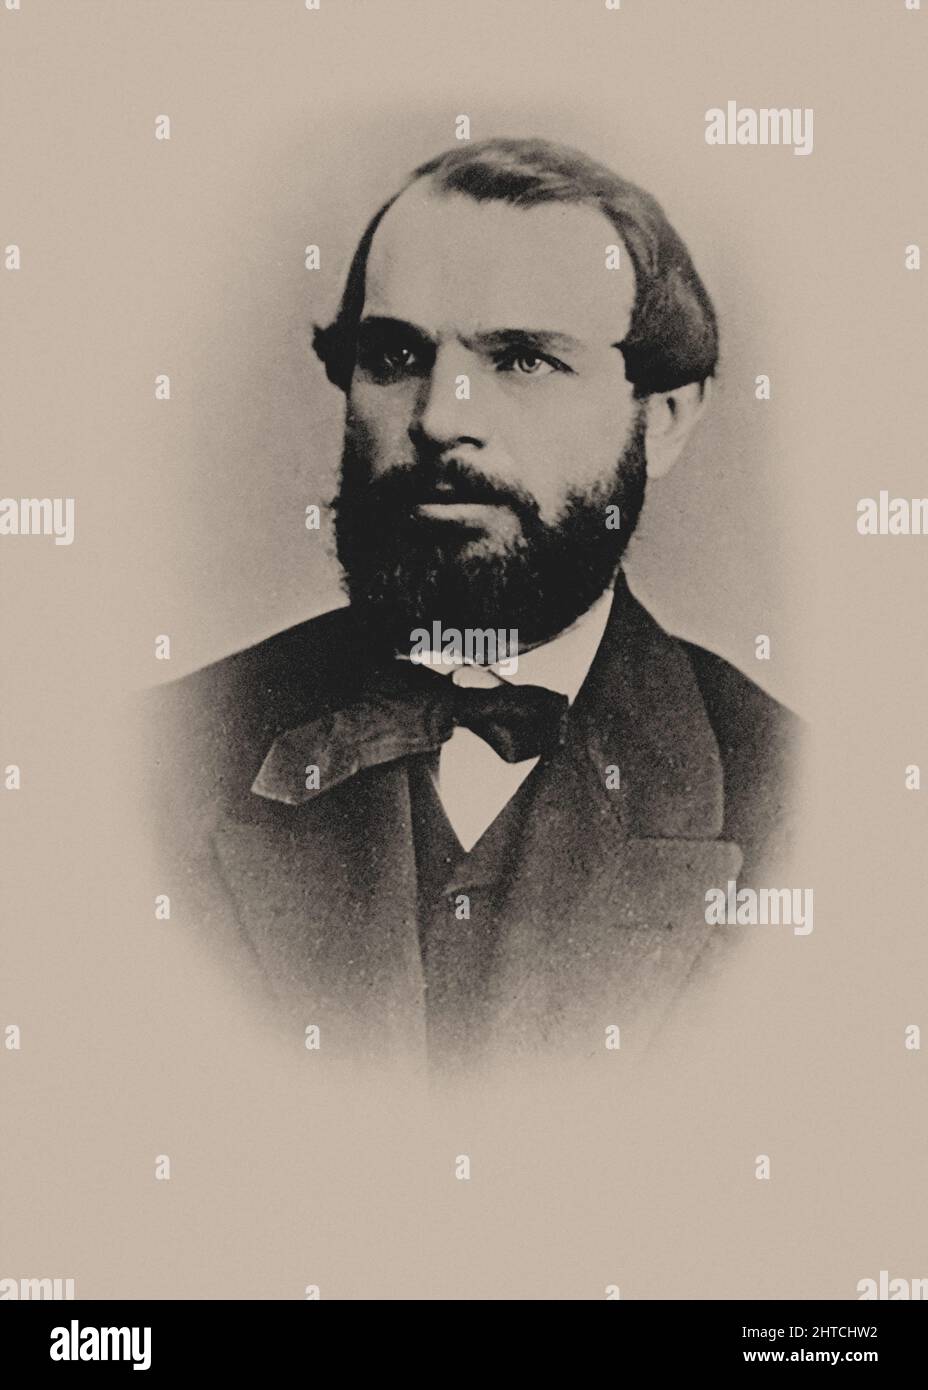 Retrato del compositor Vladimir Nikitich Kashperov (1827-1894). Colección privada. Foto de stock